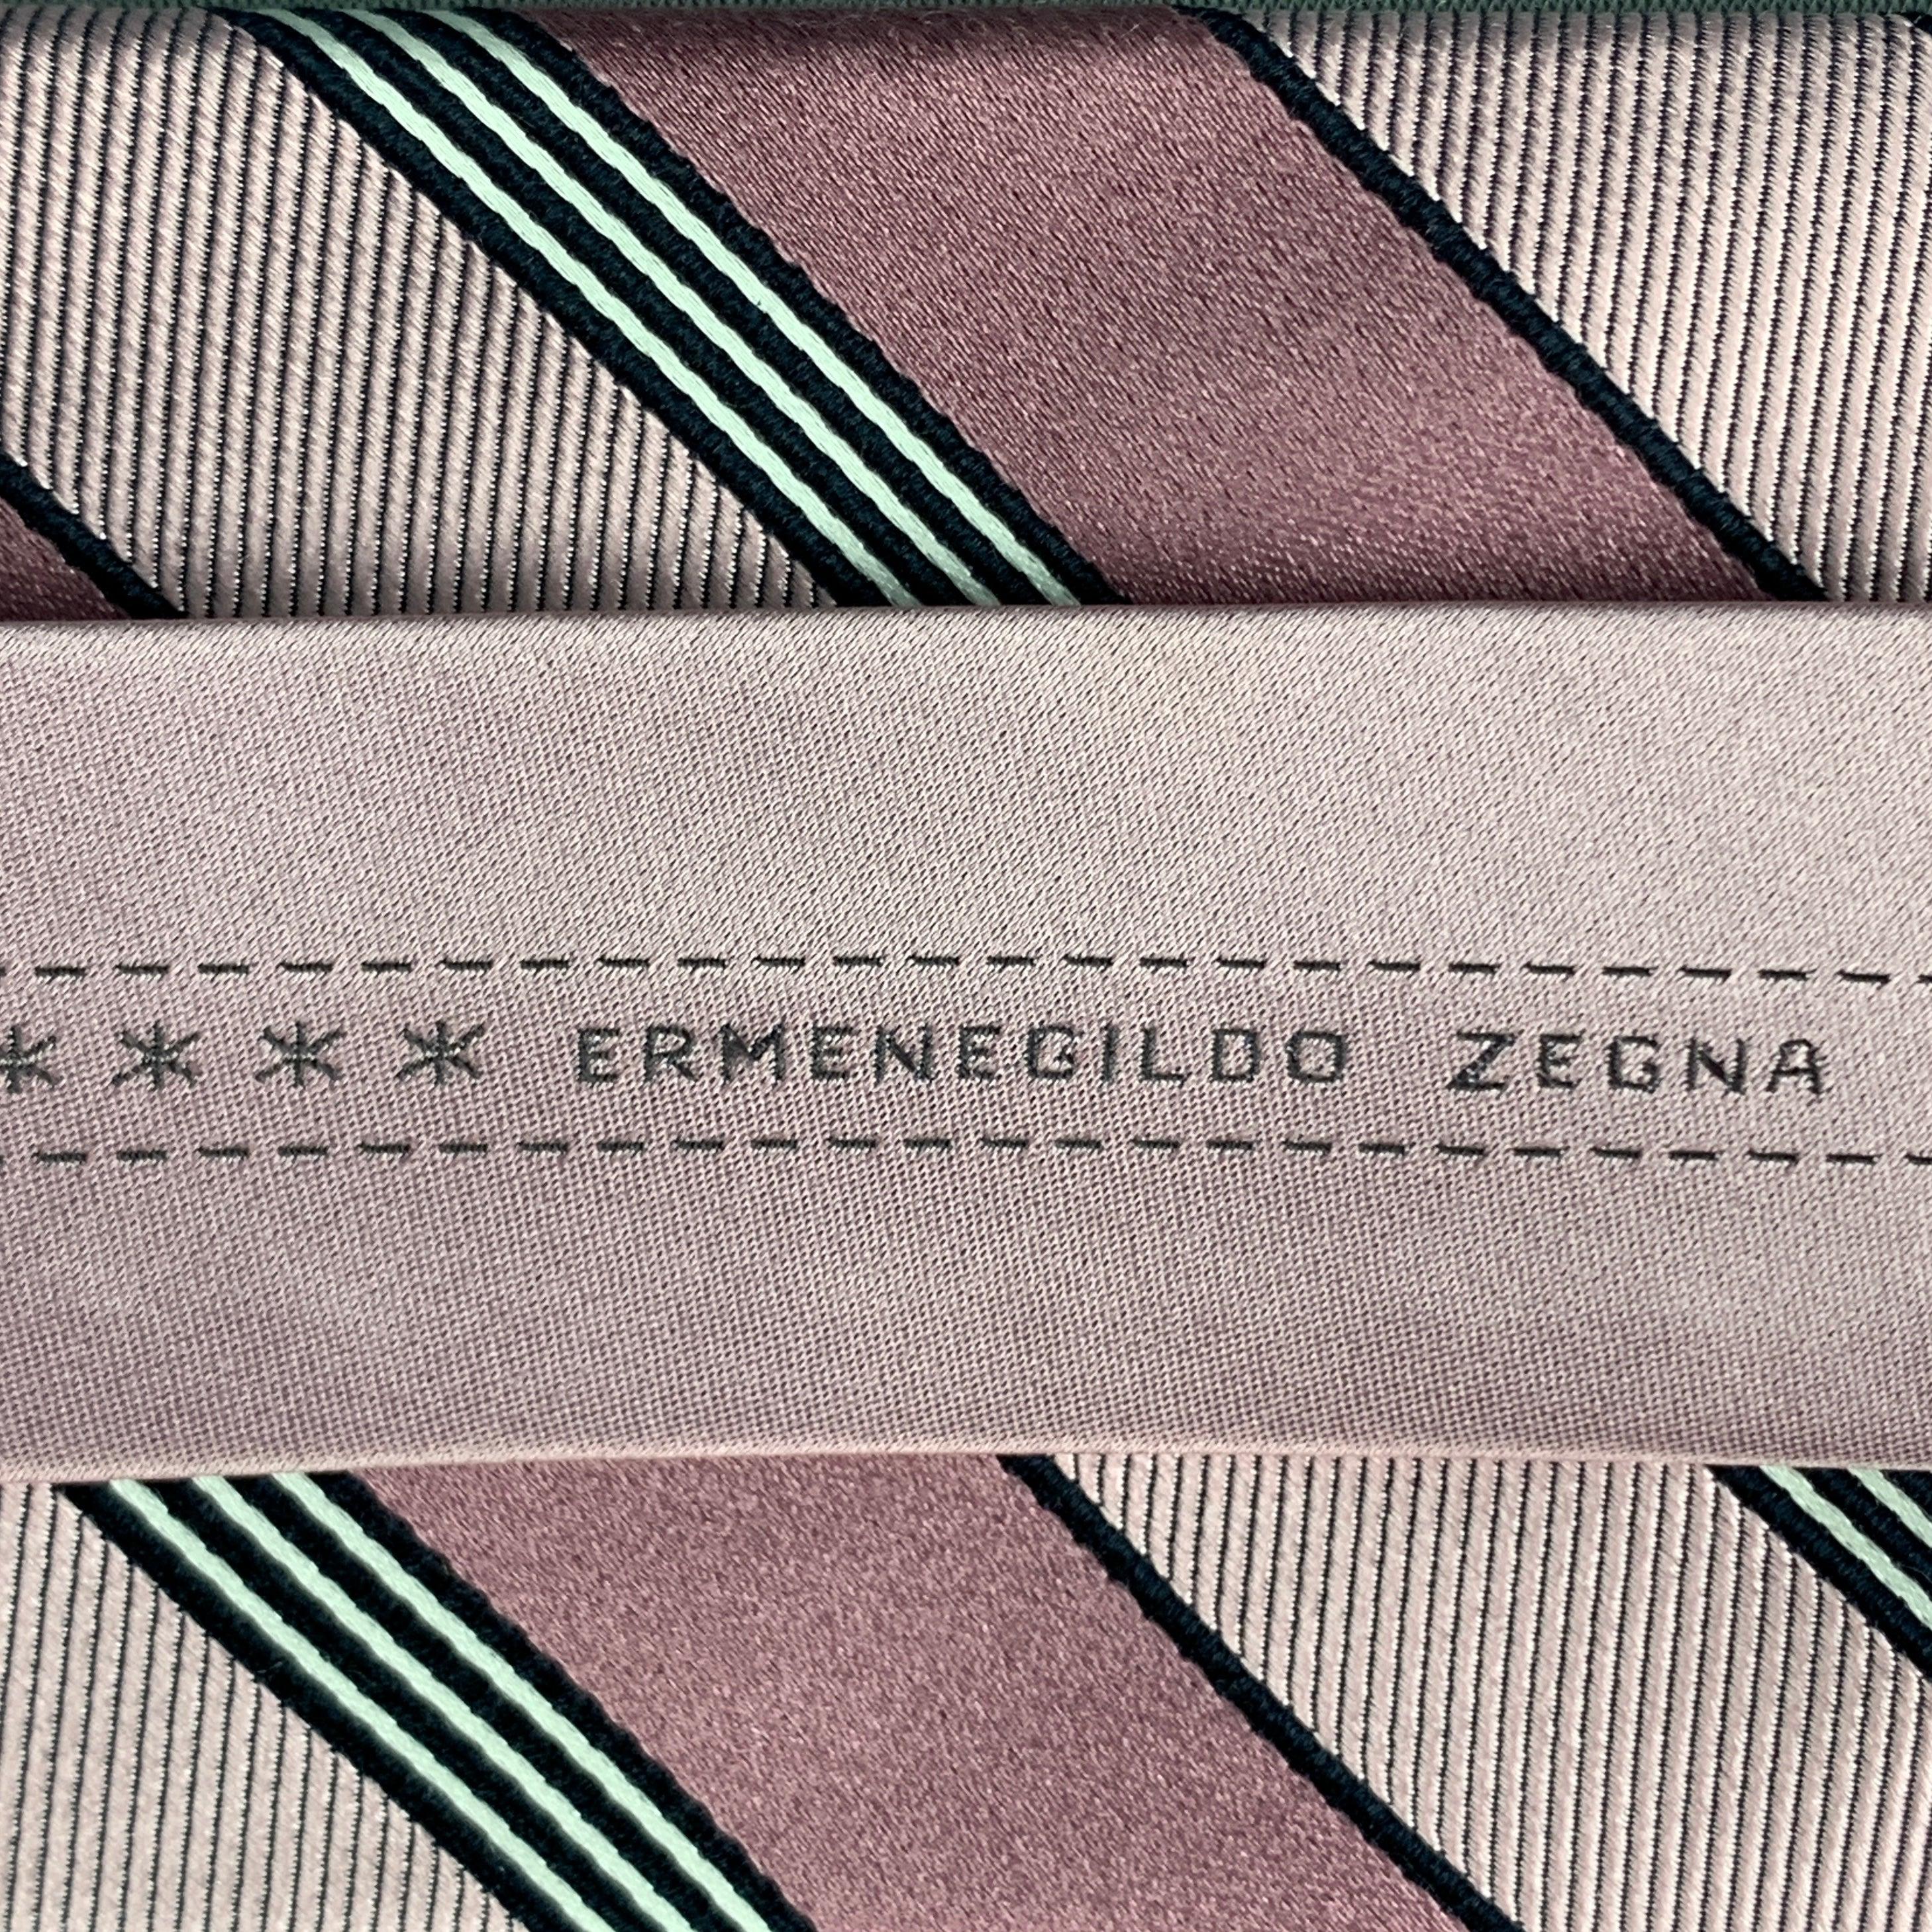 ERMENEGILDO ZEGNA Vintage-Krawatte in Rosa mit schwarzen Diagonalstreifen. 100% Seide. Hergestellt in Italien.
Sehr guter gebrauchter Zustand
 

Abmessungen: 
  Breite: 3 Zoll Länge: 60 Zoll 


  
  
 
Referenz: 124758
Kategorie: Krawatte
Mehr